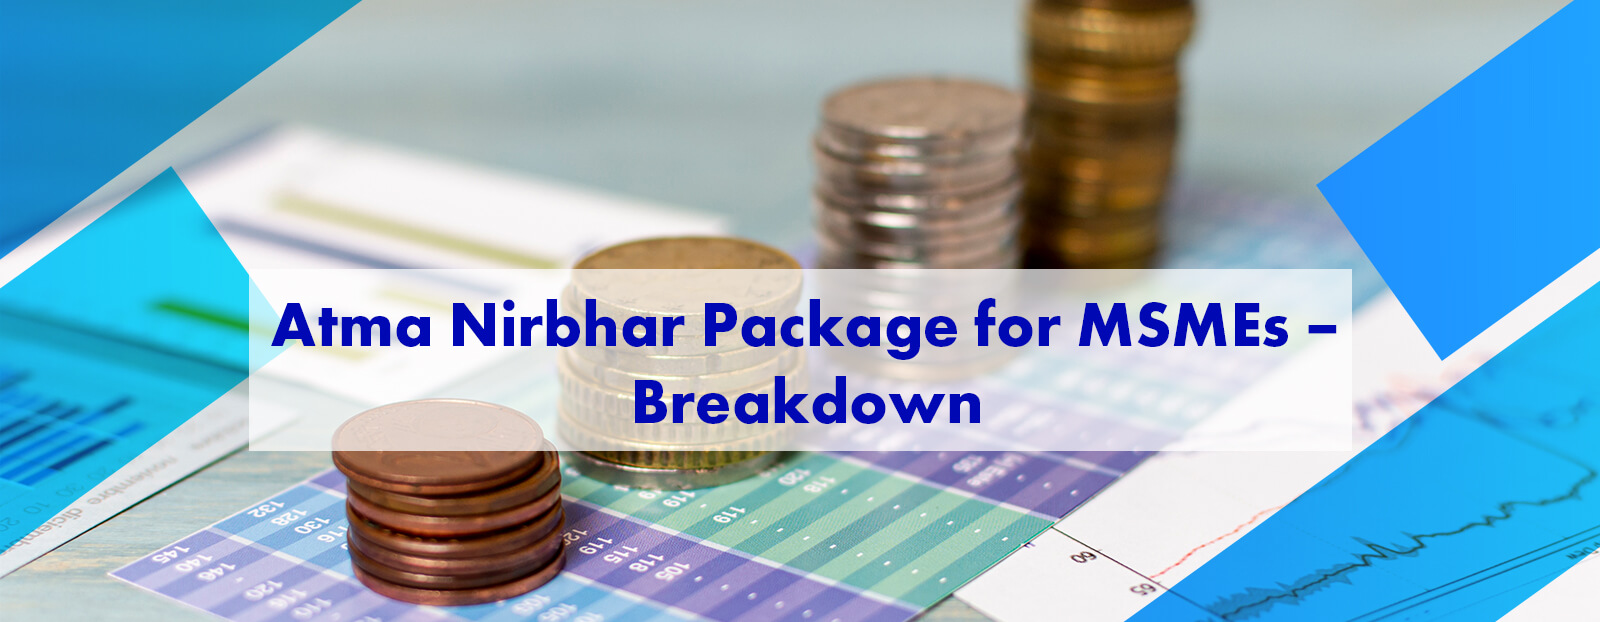 Atma Nirbhar Package for MSMEs – Breakdown